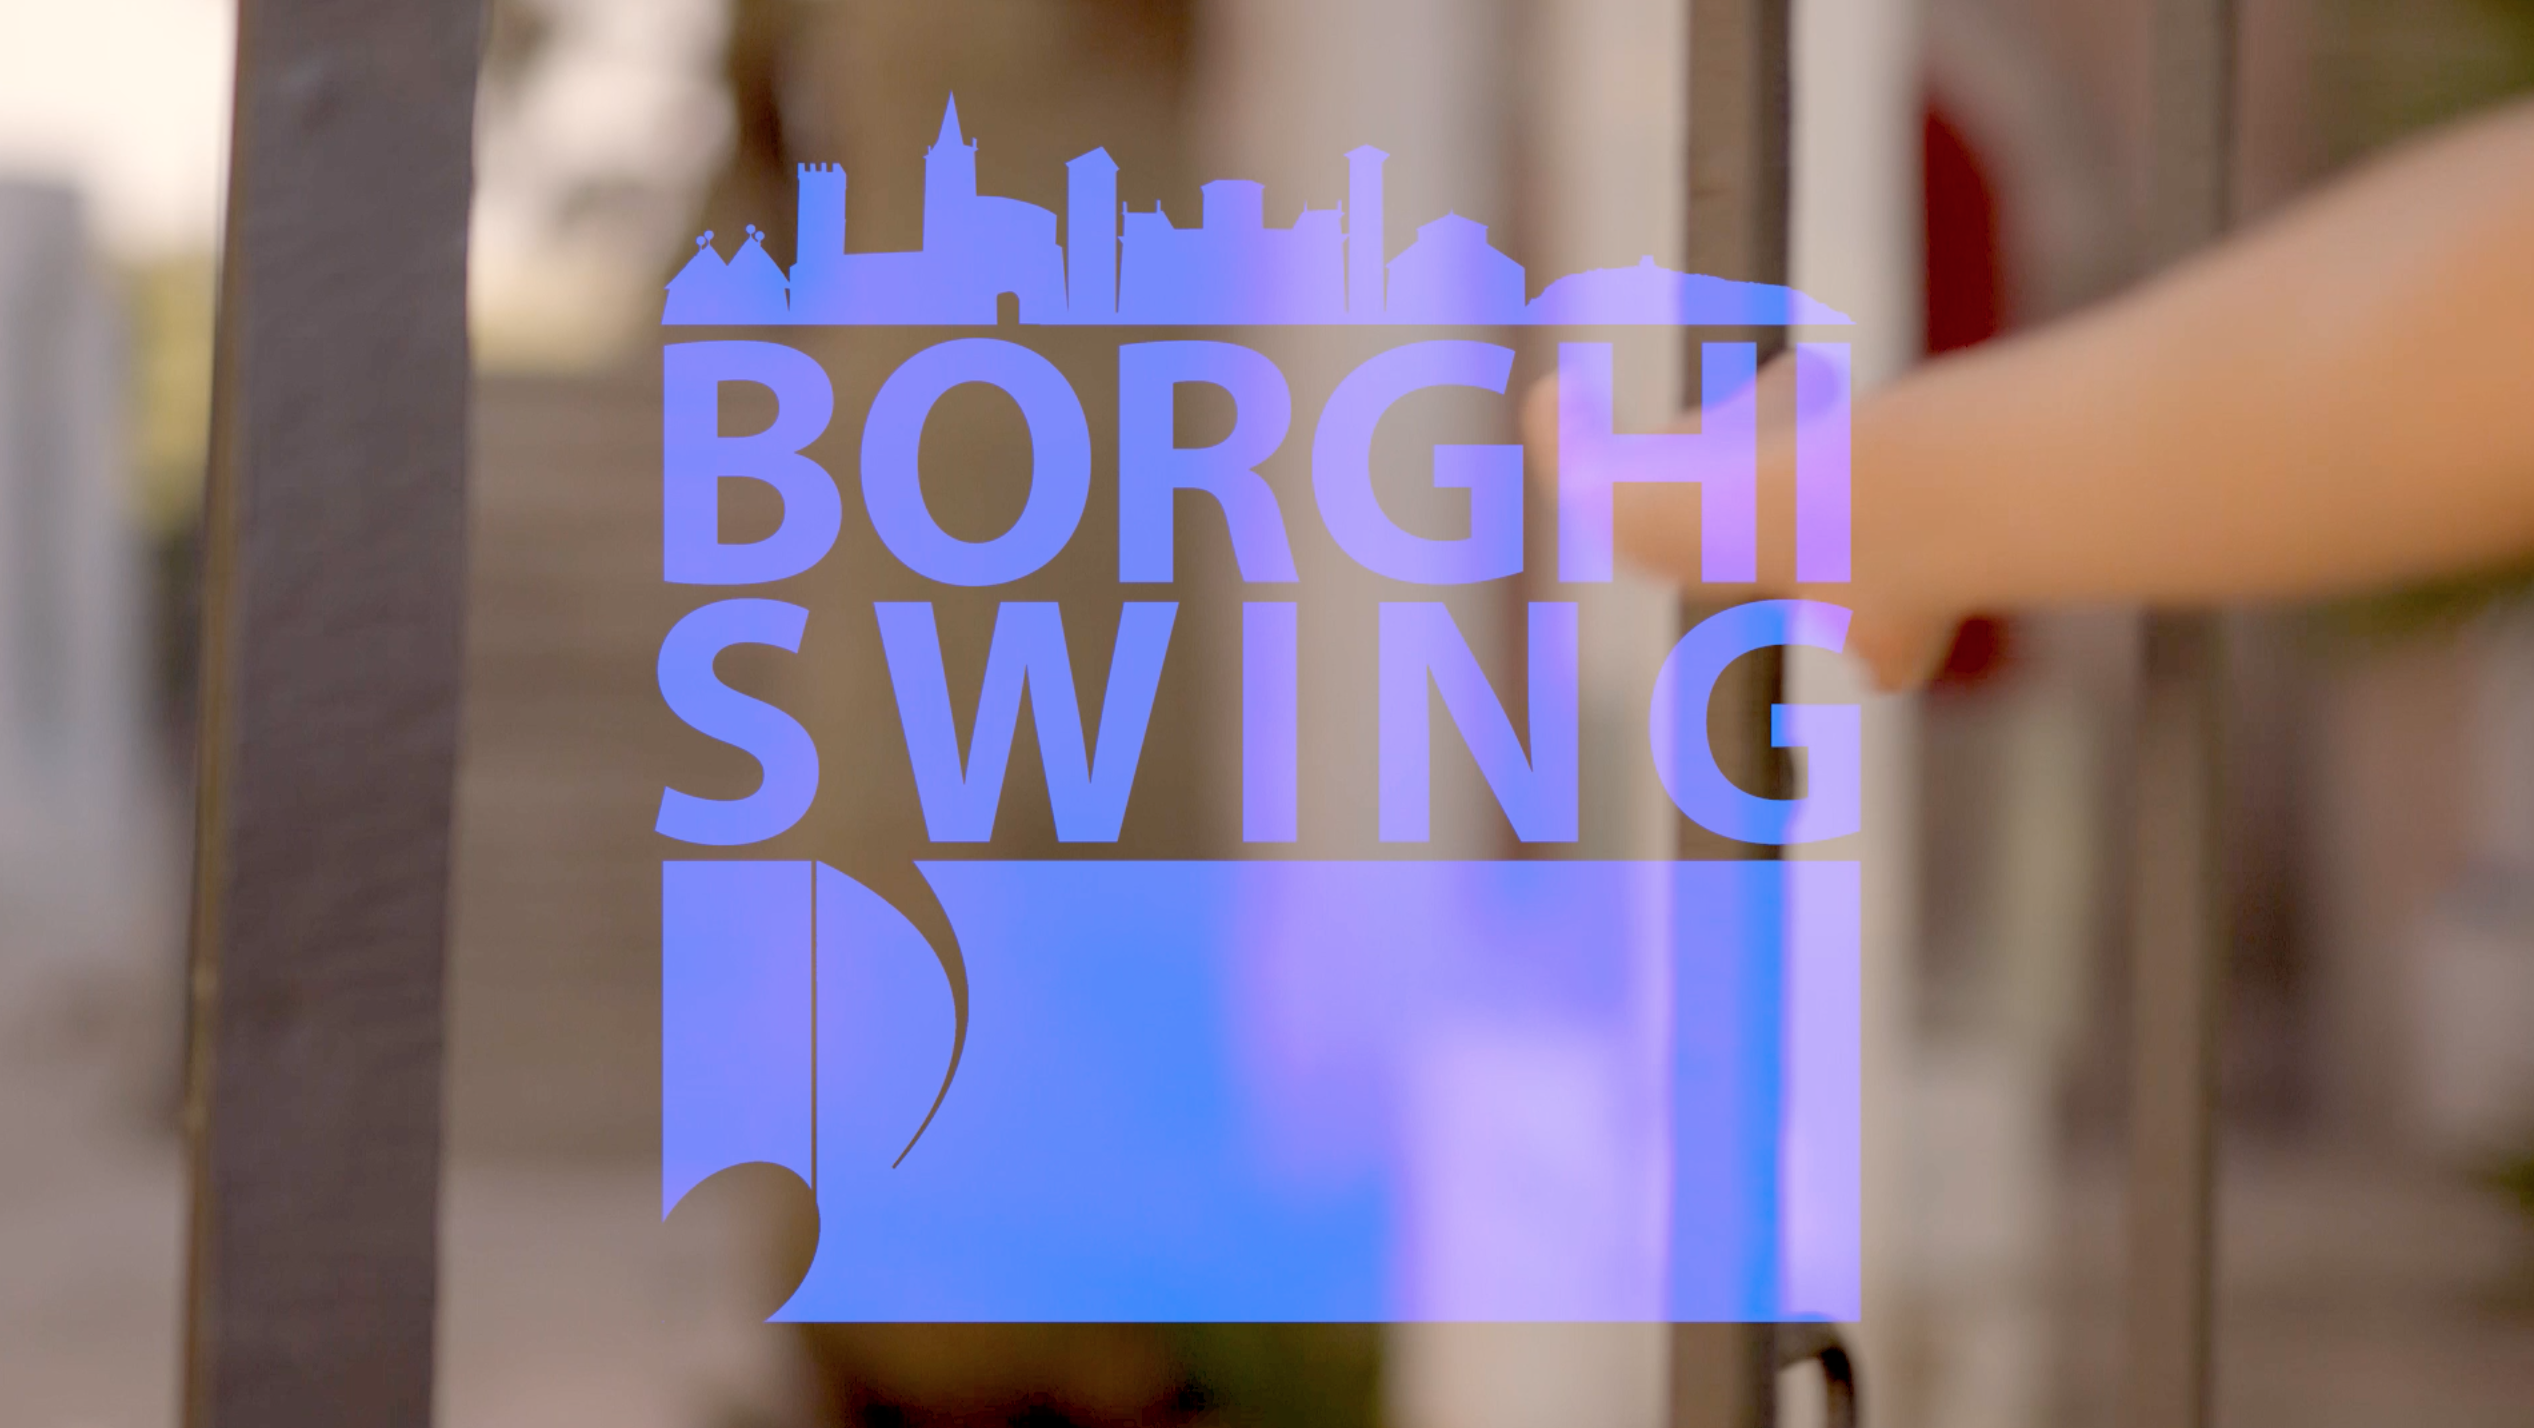 Borghi Swing, i borghi più musicali d’Italia